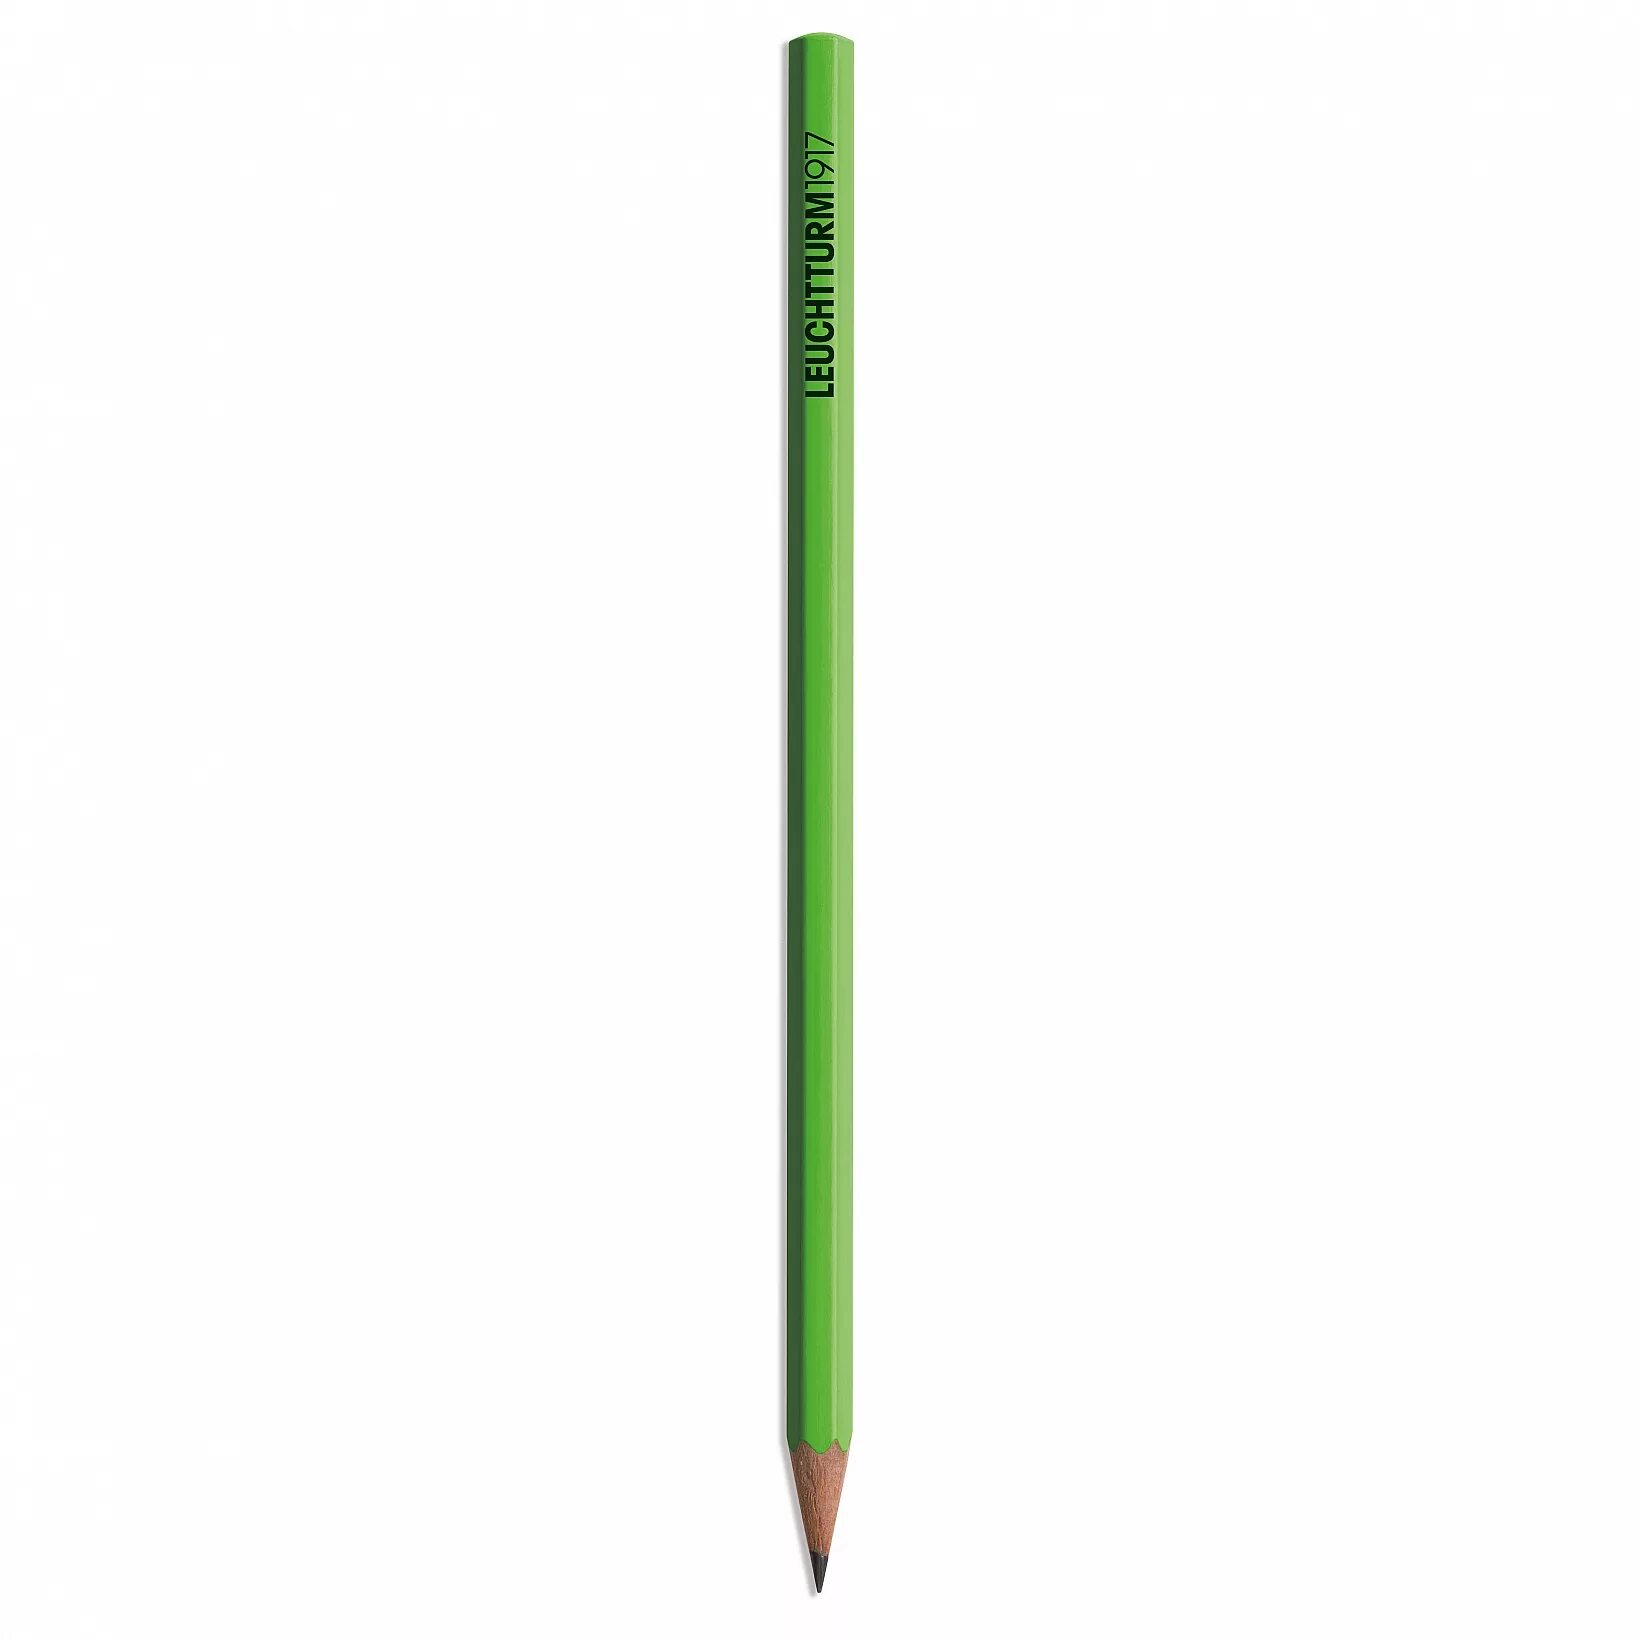 Купить зеленый карандаш. Простой карандаш зеленый. Простой карандаш зеленого цвета. Простой чернографитный карандаш зелёного цвета. Фирменные простые карандаши.